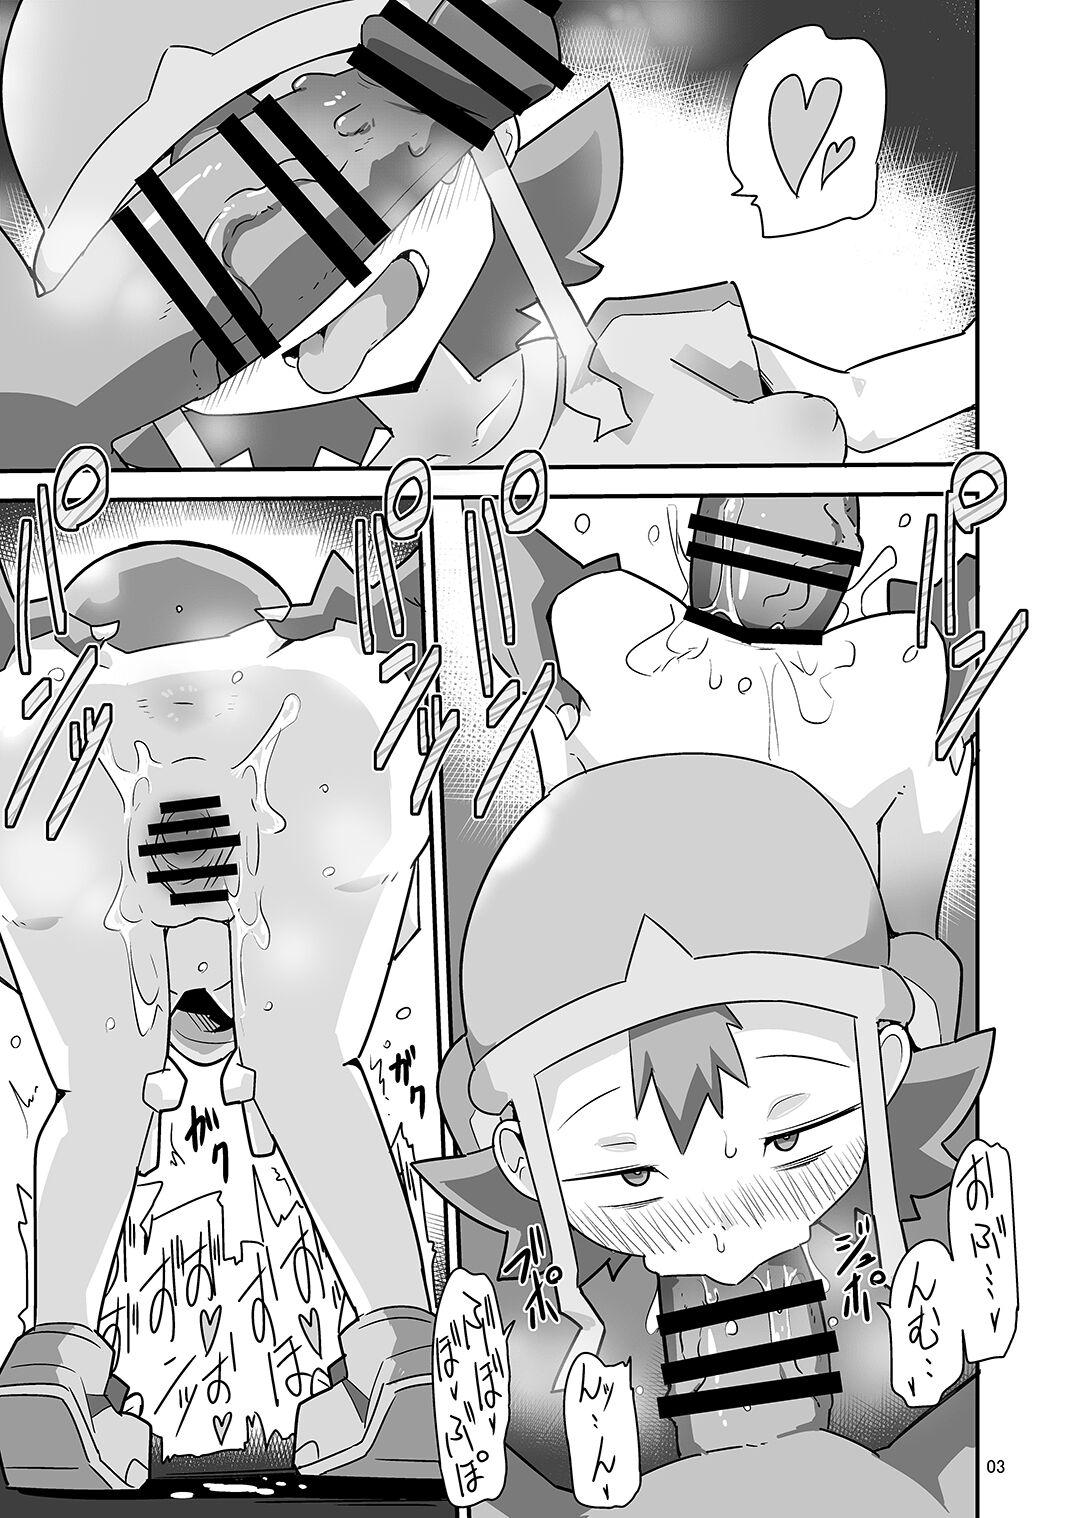 Lez Hardcore Gobli nanka ni Zettai Makenai mon: - Digimon Hd Porn - Page 4